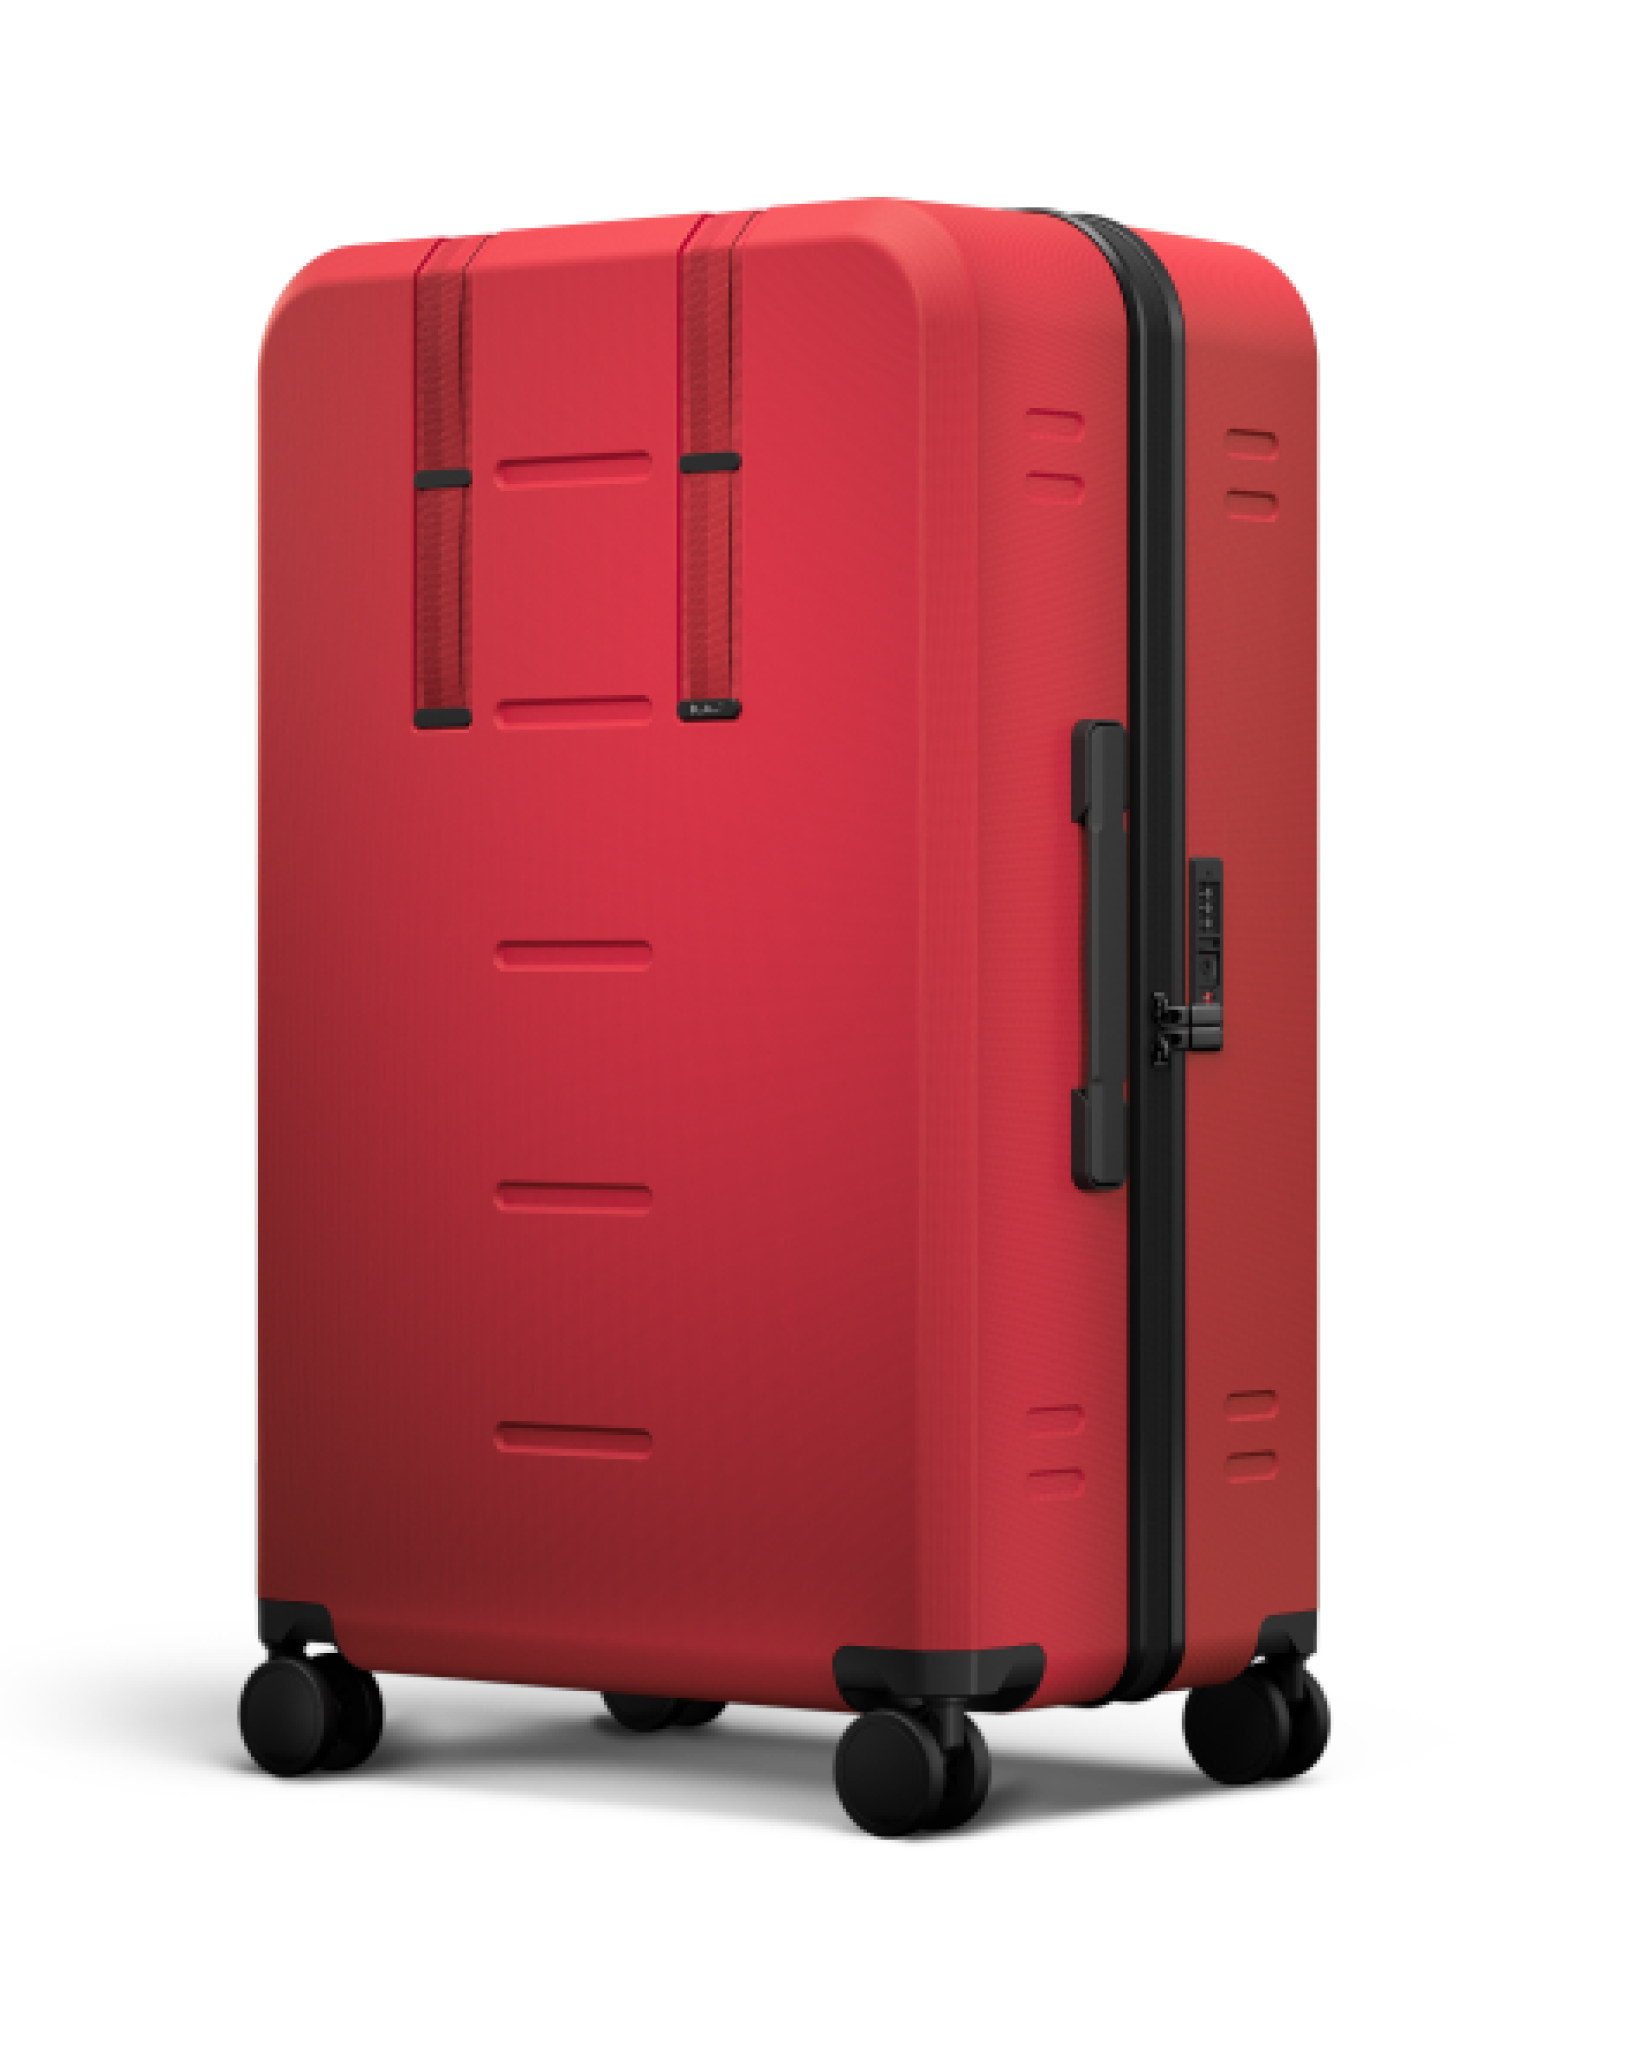 Ramverk Check-In Luggage Large Sprite Lightning Red Sprite Lightning Red